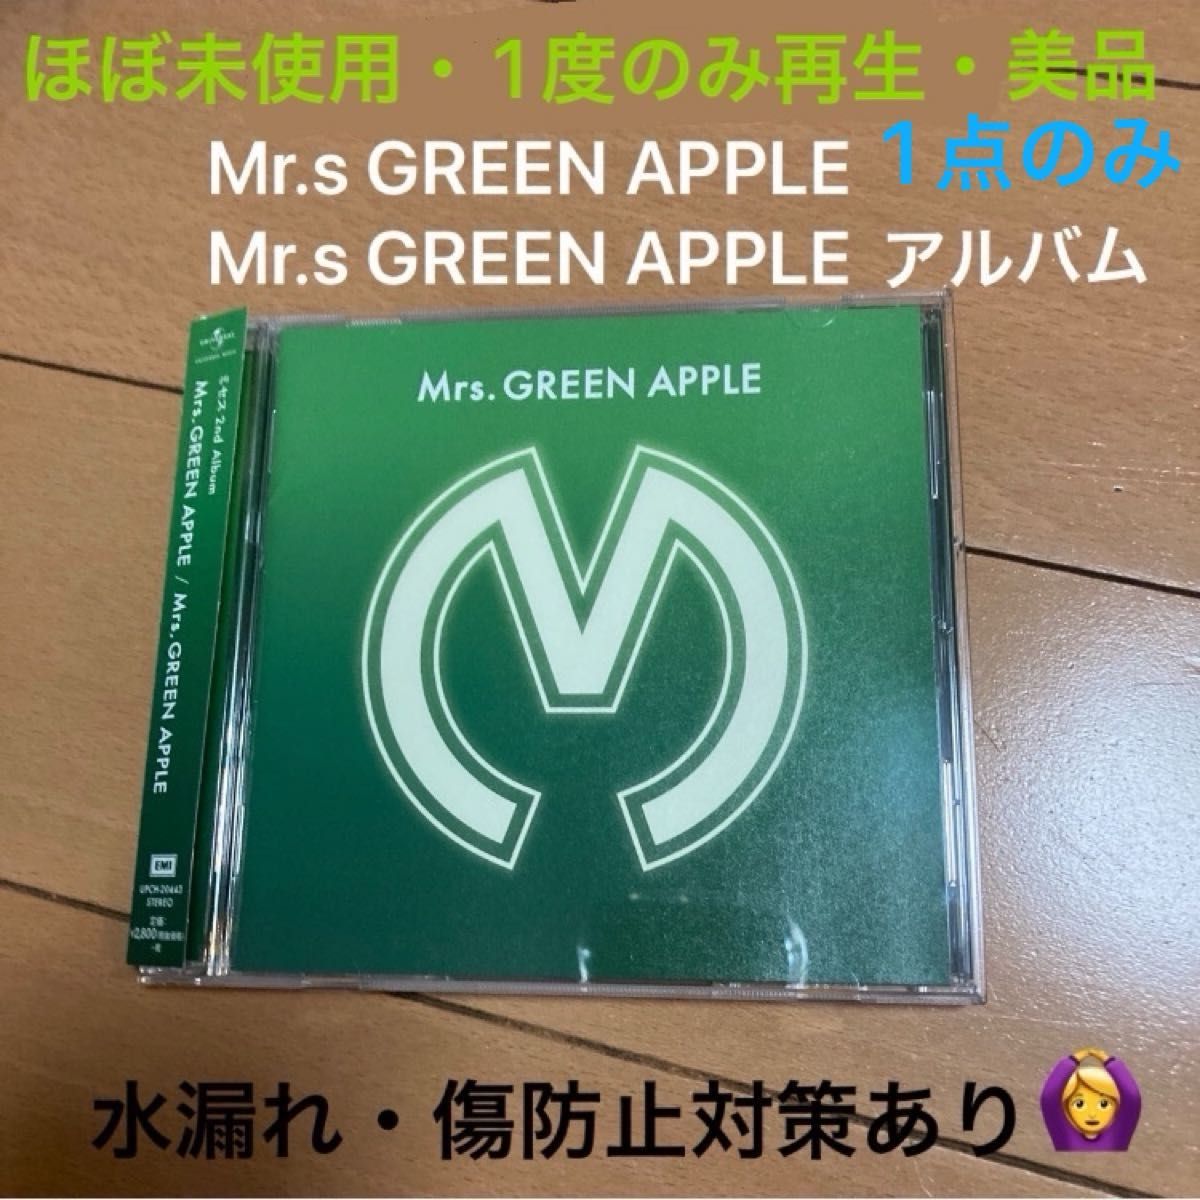 【ほぼ未使用・1度のみ再生・美品】Mrs GREEN APPLE Mr.s GREEN APPLE 通常盤 ミセスグリーンアップル